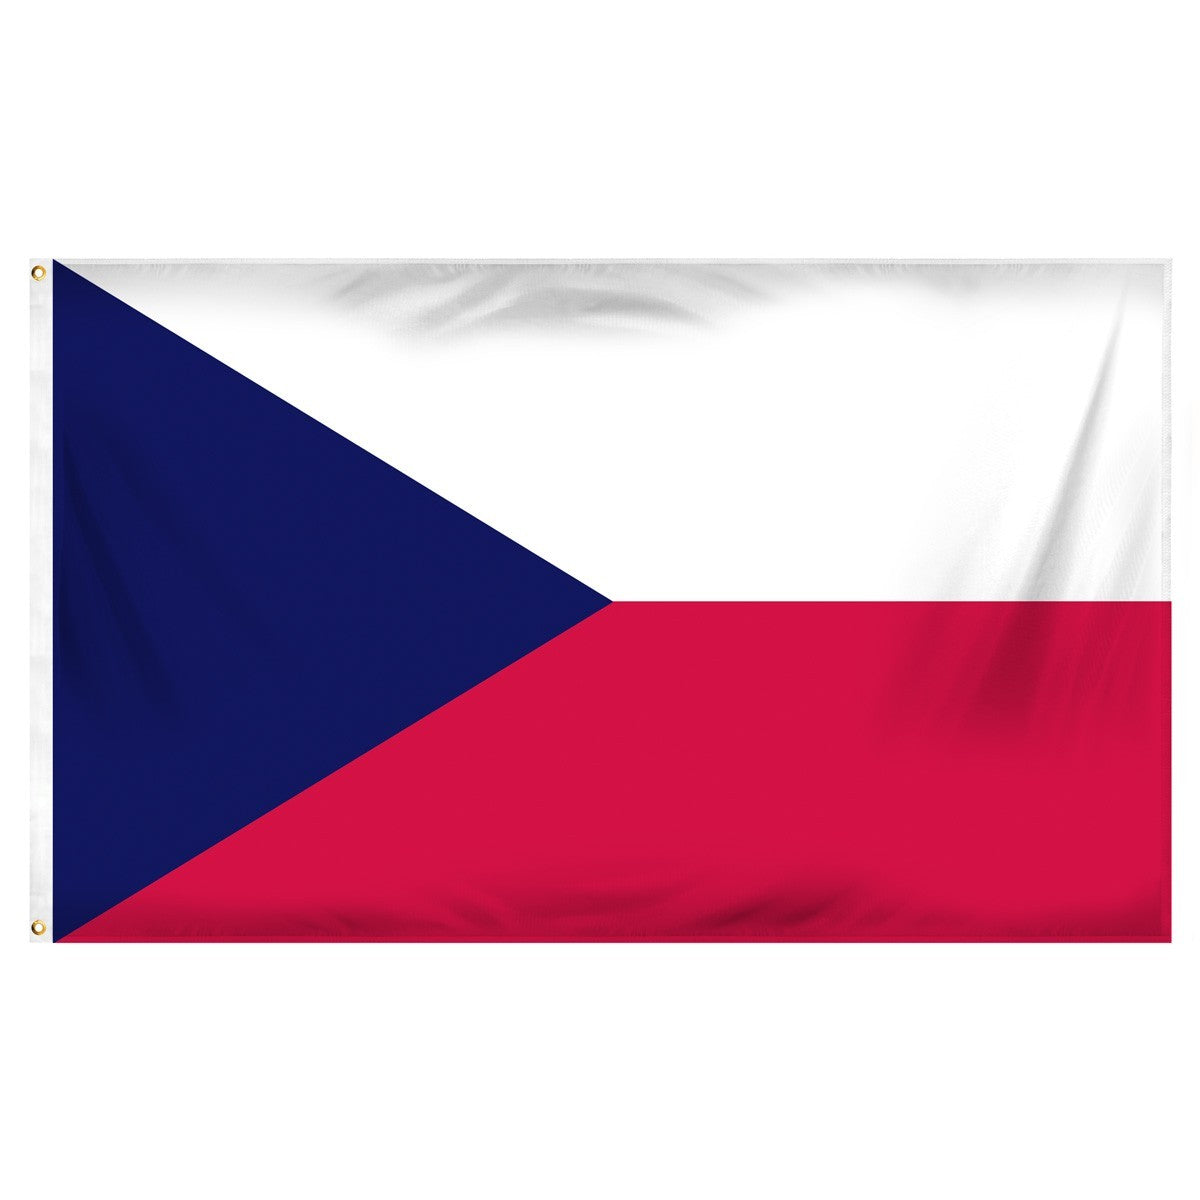 Czech Republic Flags